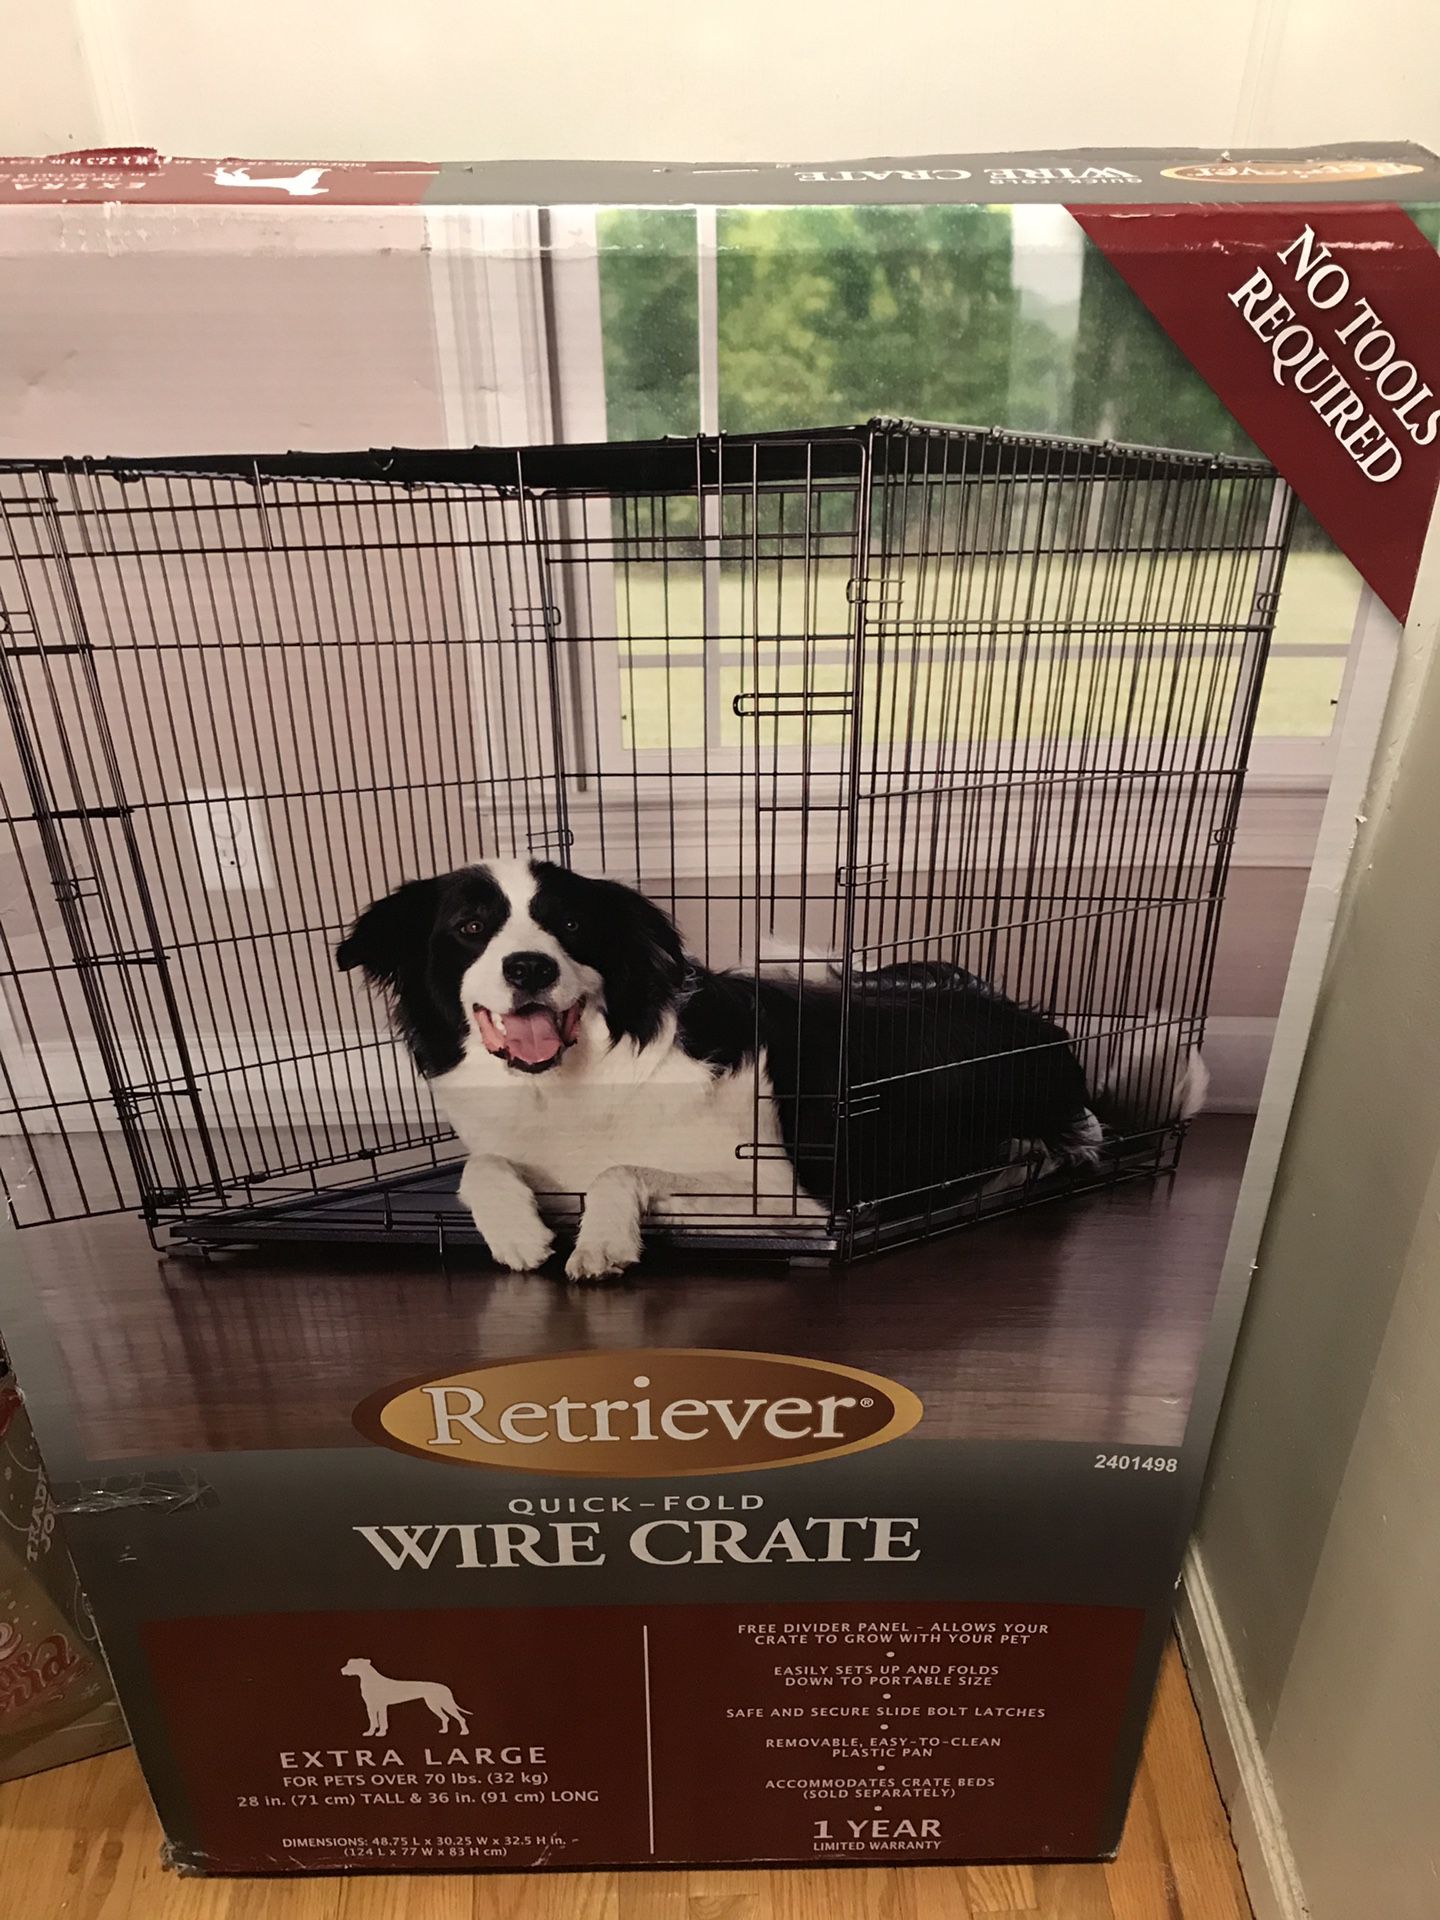 Extra large dog cage